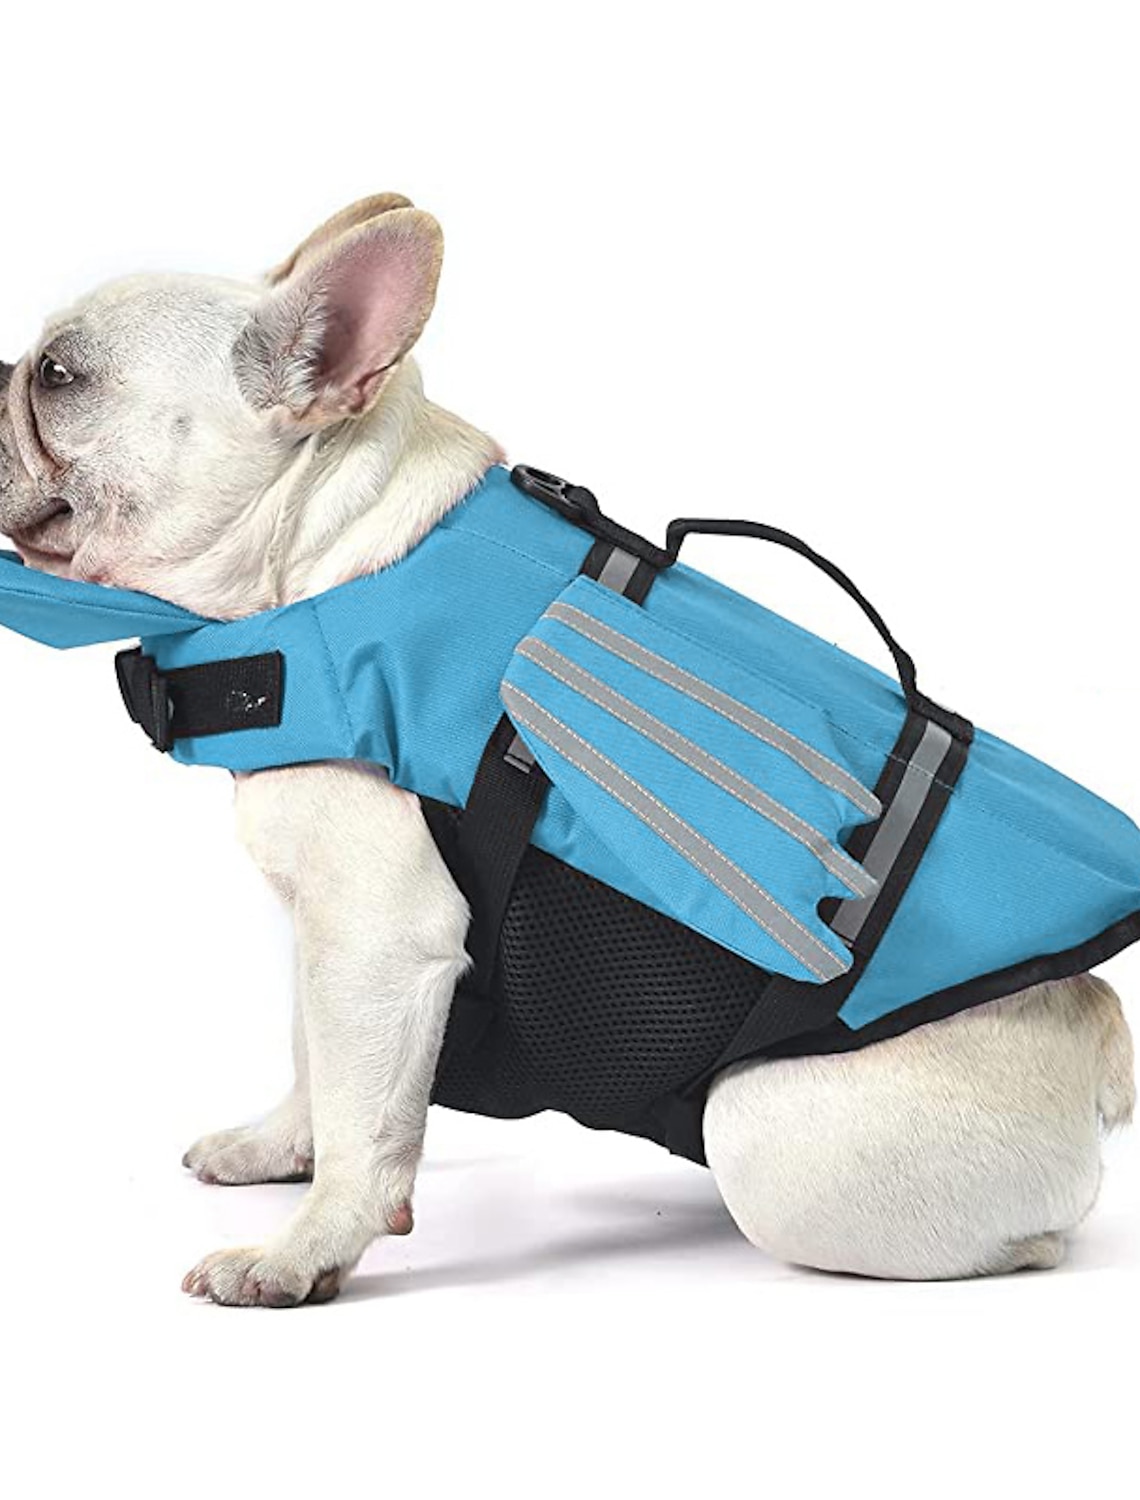 Chalecos salvavidas para perros correas d chalecos salvavidas reflectantes para mascotas Chaleco de flotación con forma de tiburón Protector de traje de baño de seguridad con rayas reflectantes